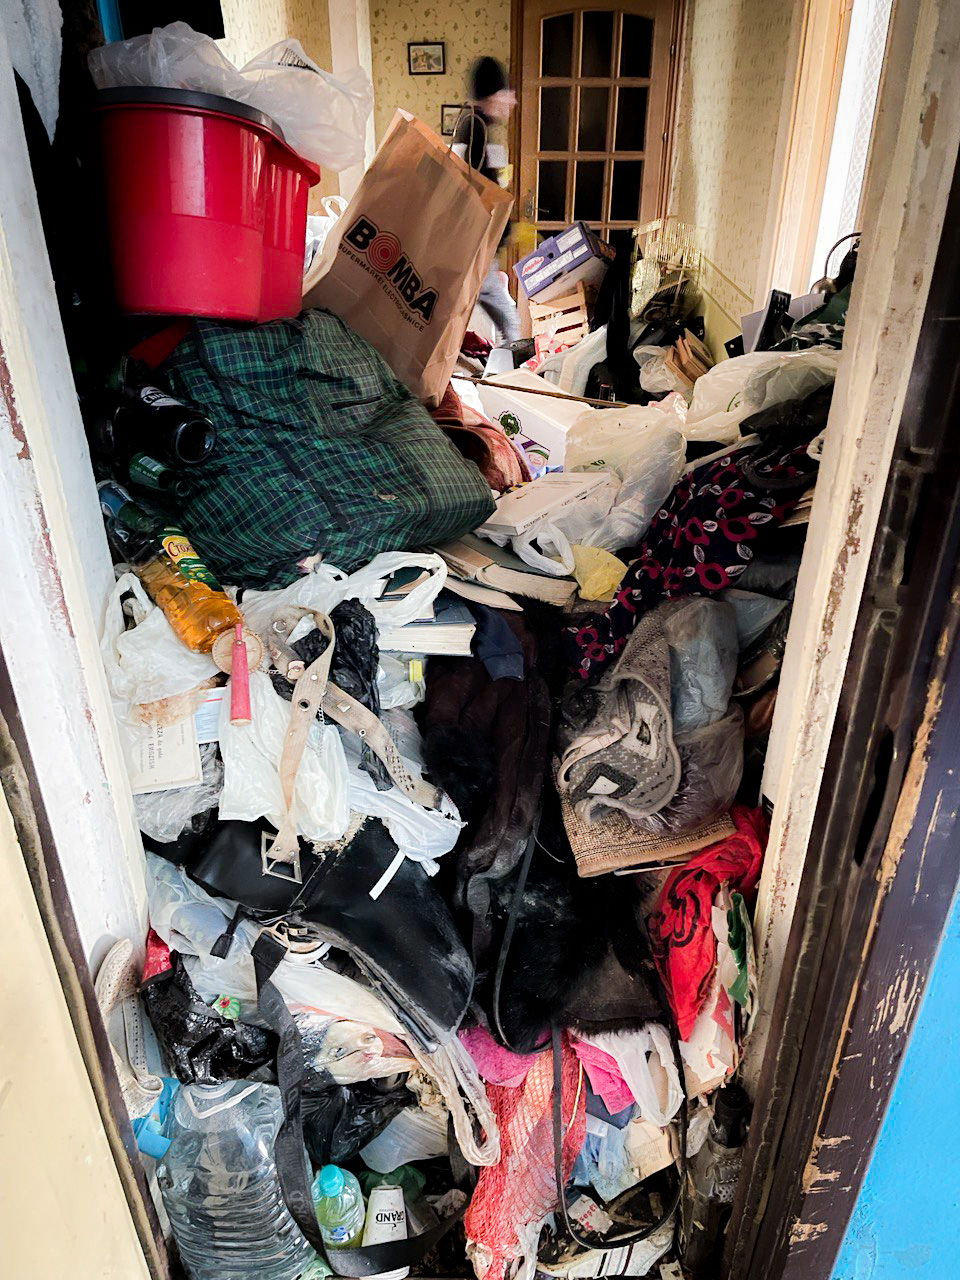 (ФОТО) В Кишиневе после жалоб соседей вскрыли заваленную мусором квартиру